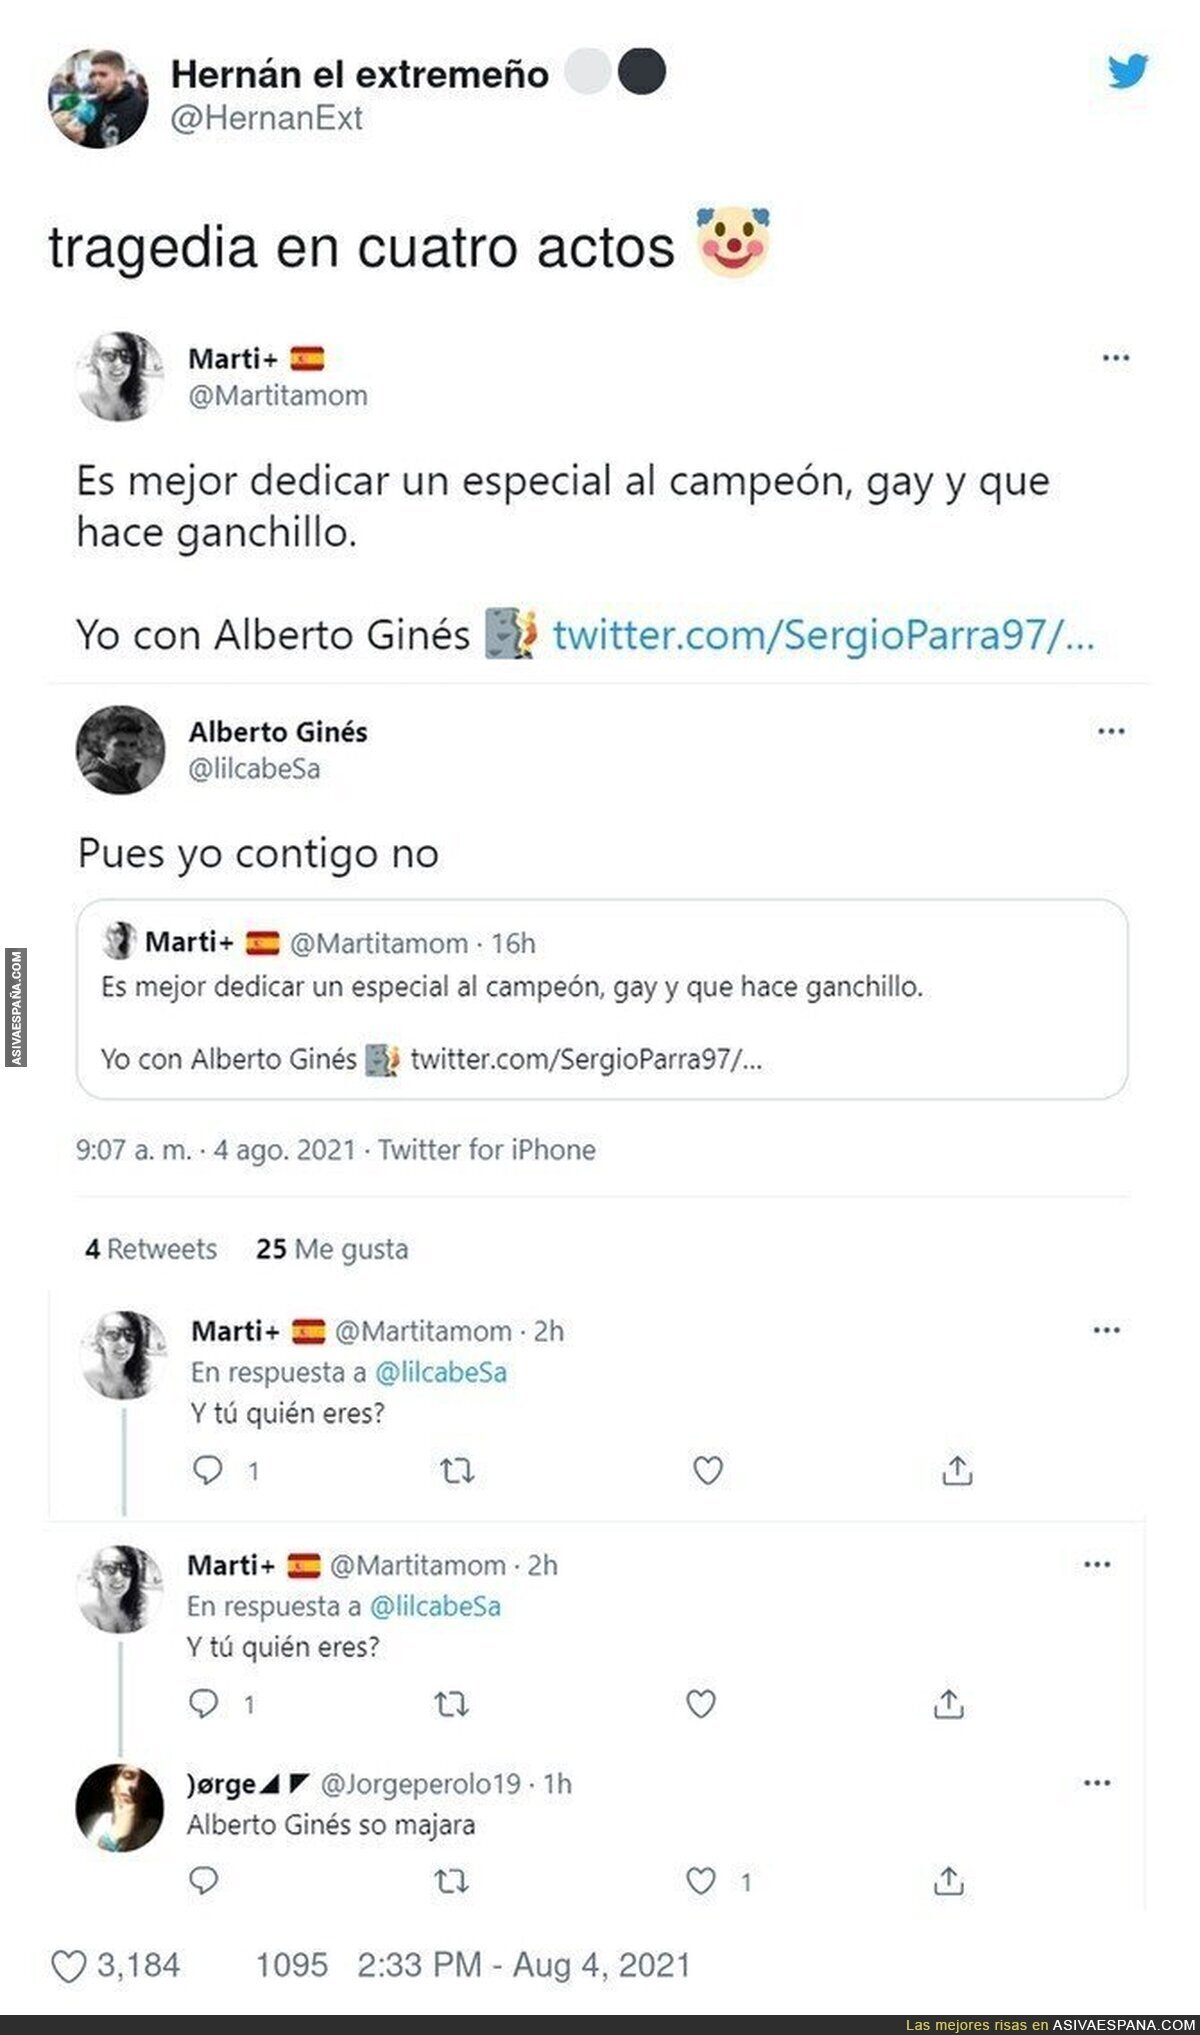 Este hilo de tuits sobre Alberto Ginés, oro olímpico, en escalada es muy grande